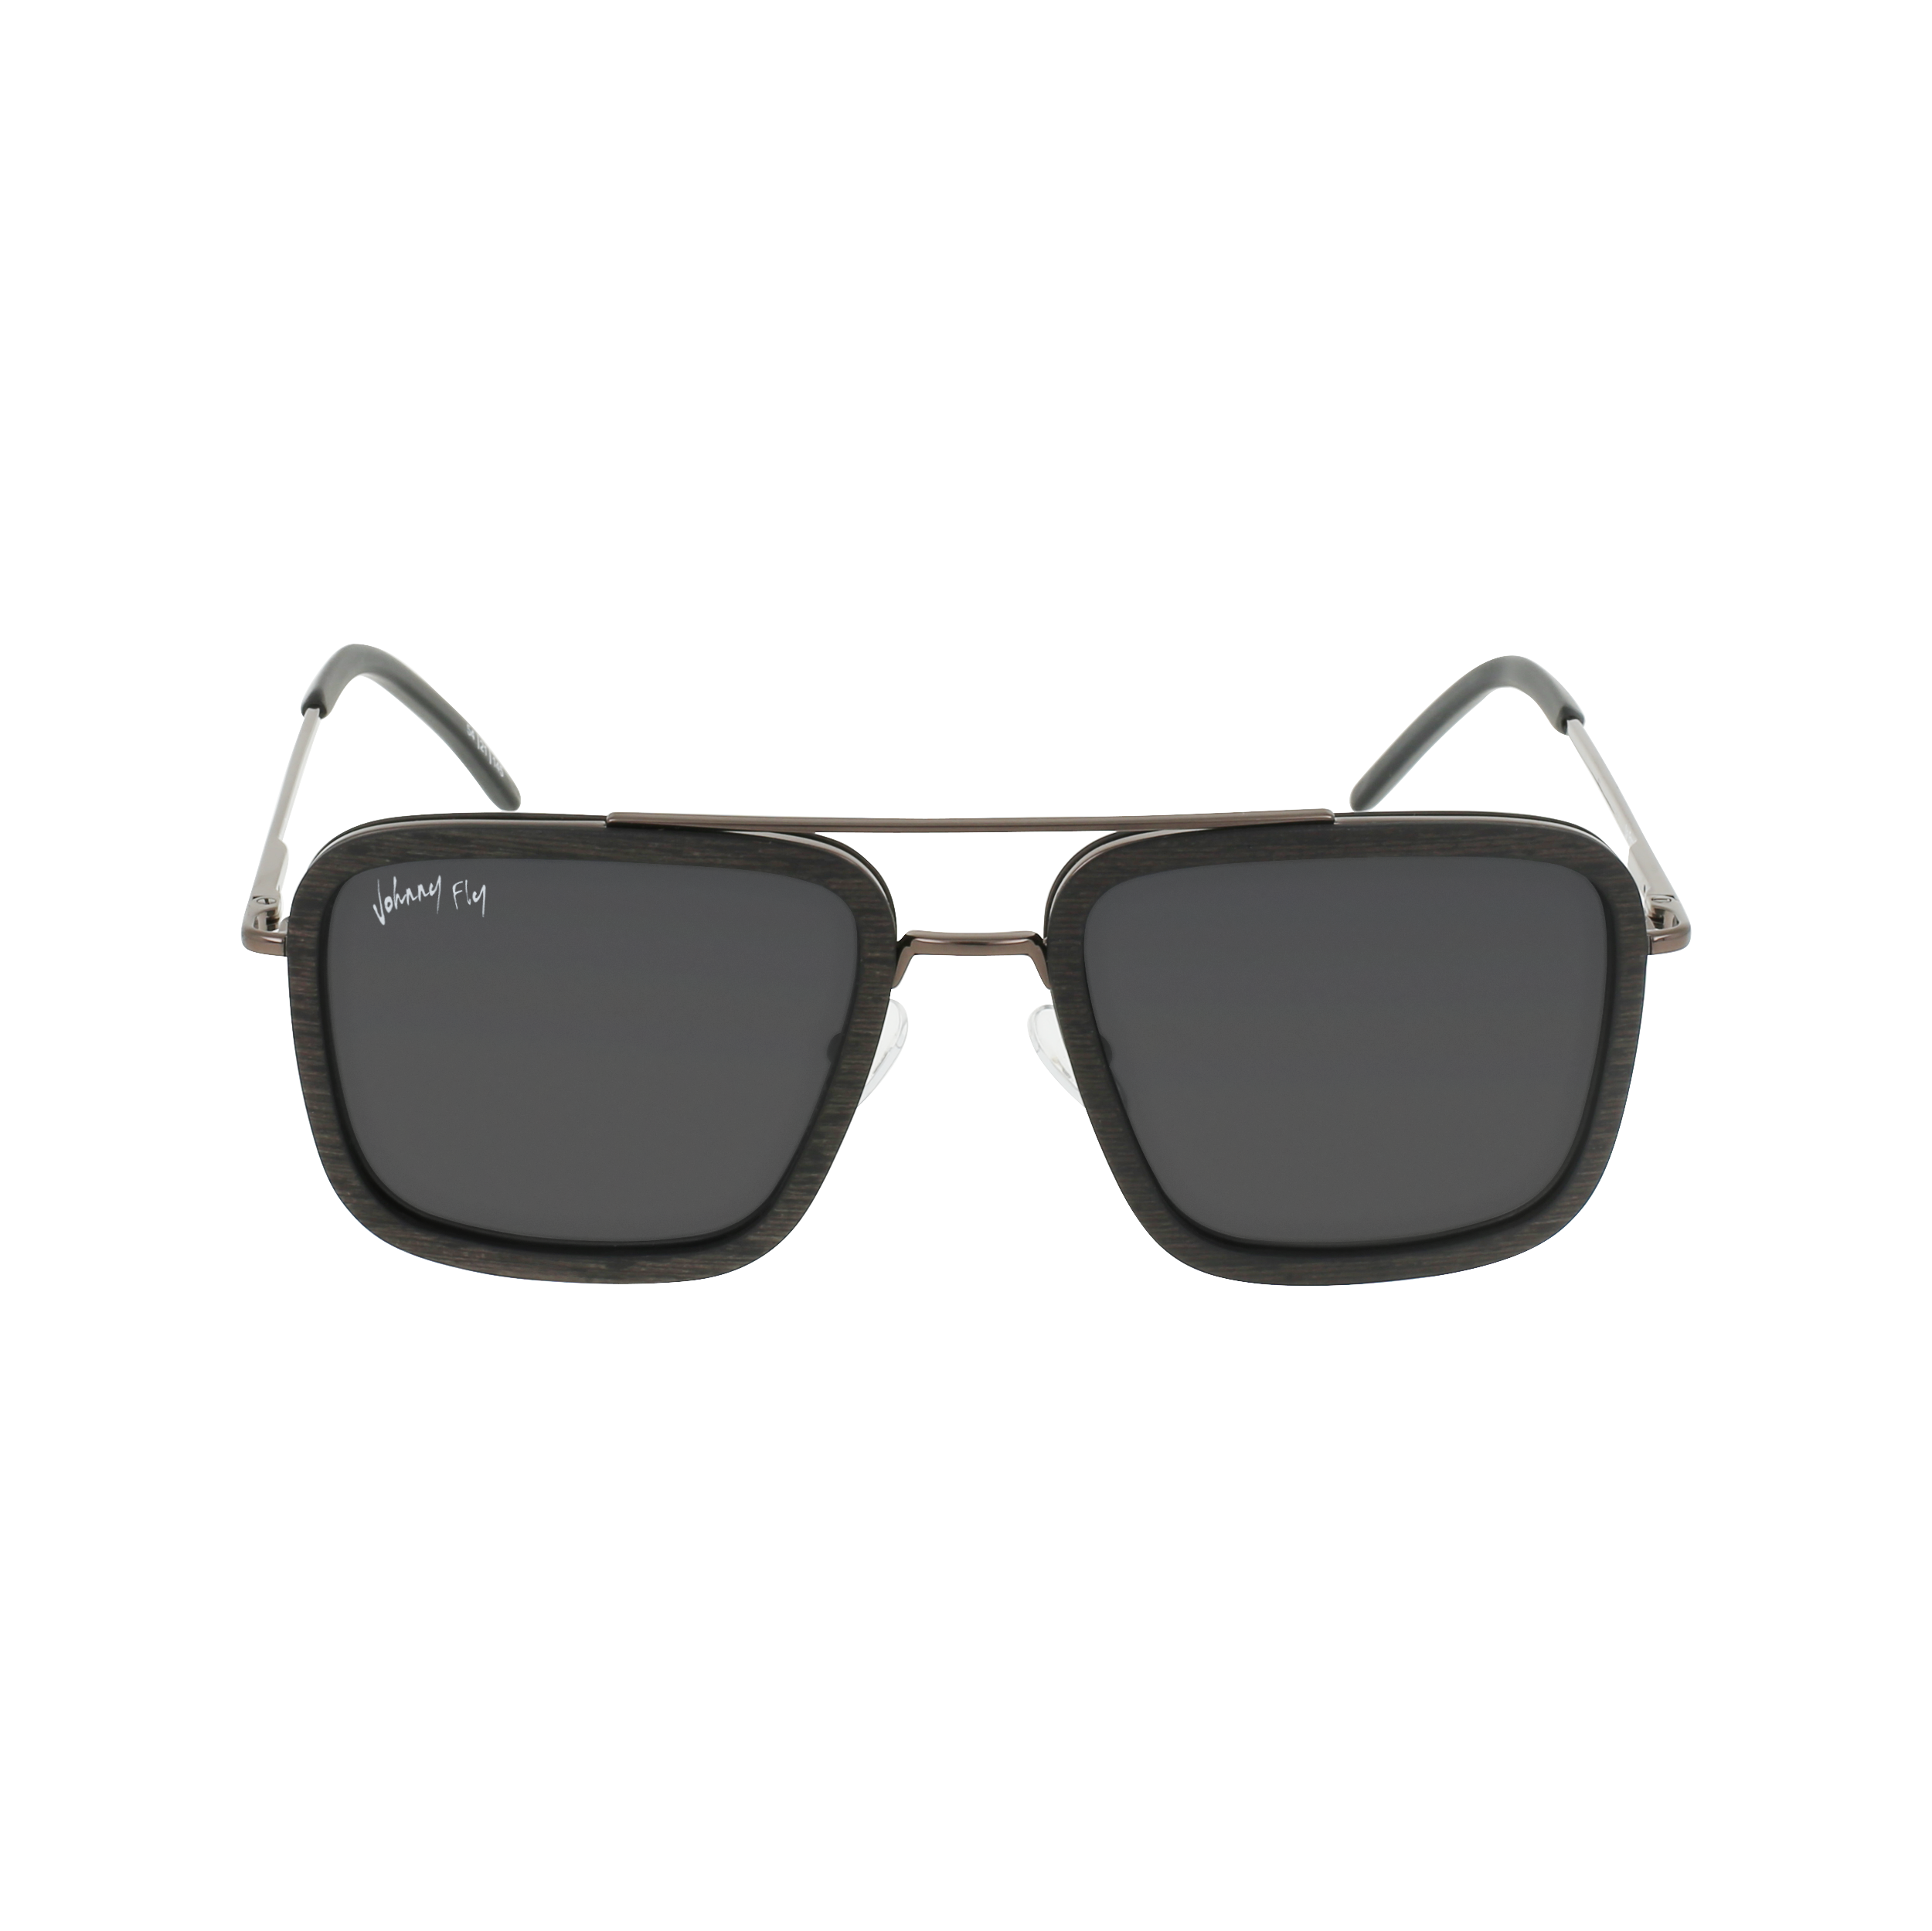 LAFORGE Sunglasses Frame - Gunmetal- Johnny Fly | LAF-GUNM-POL-SMK | | 